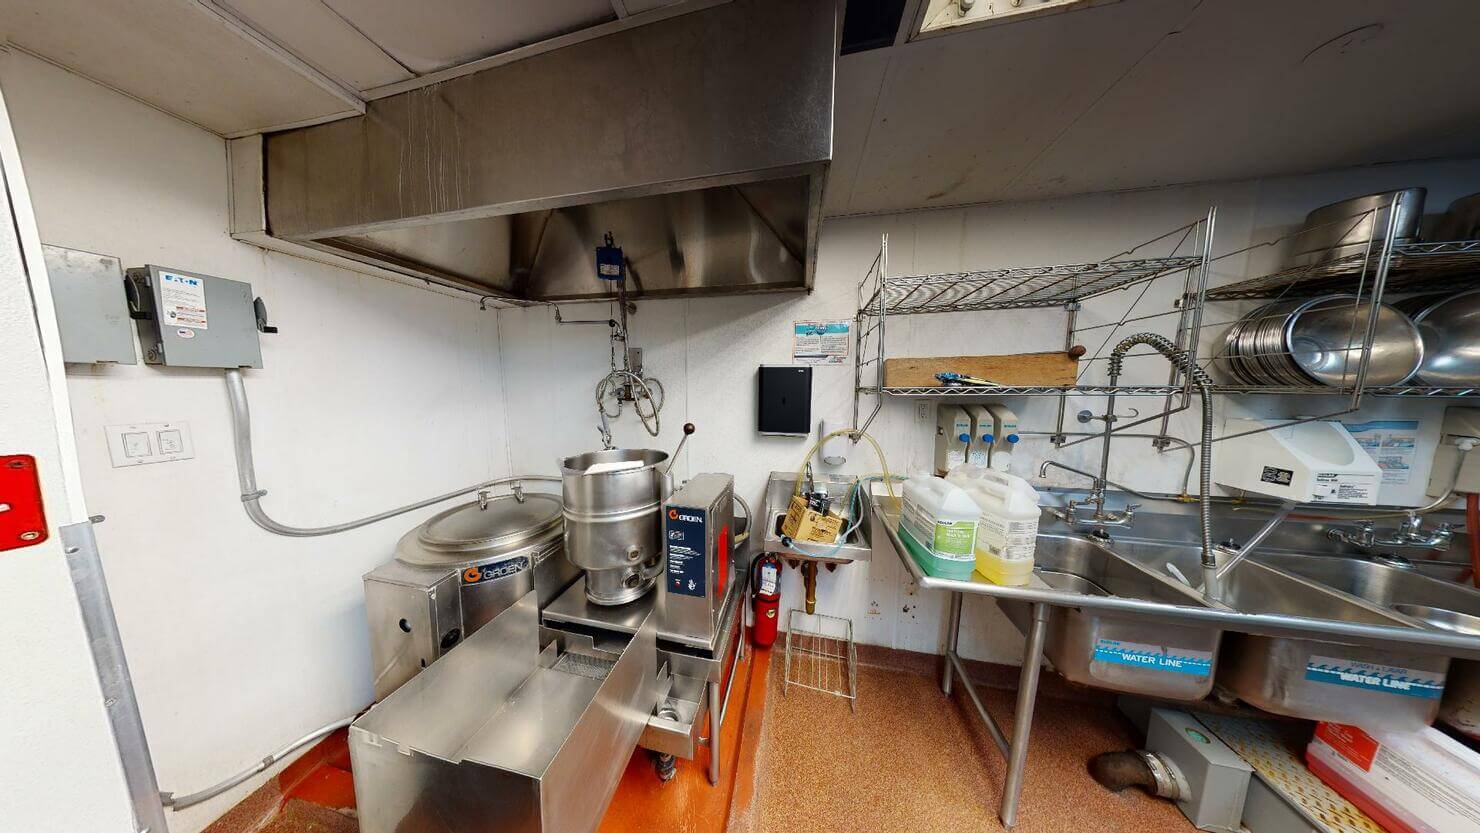 369 Lexington Avenue Restaurant Space - Kitchen in the Basement